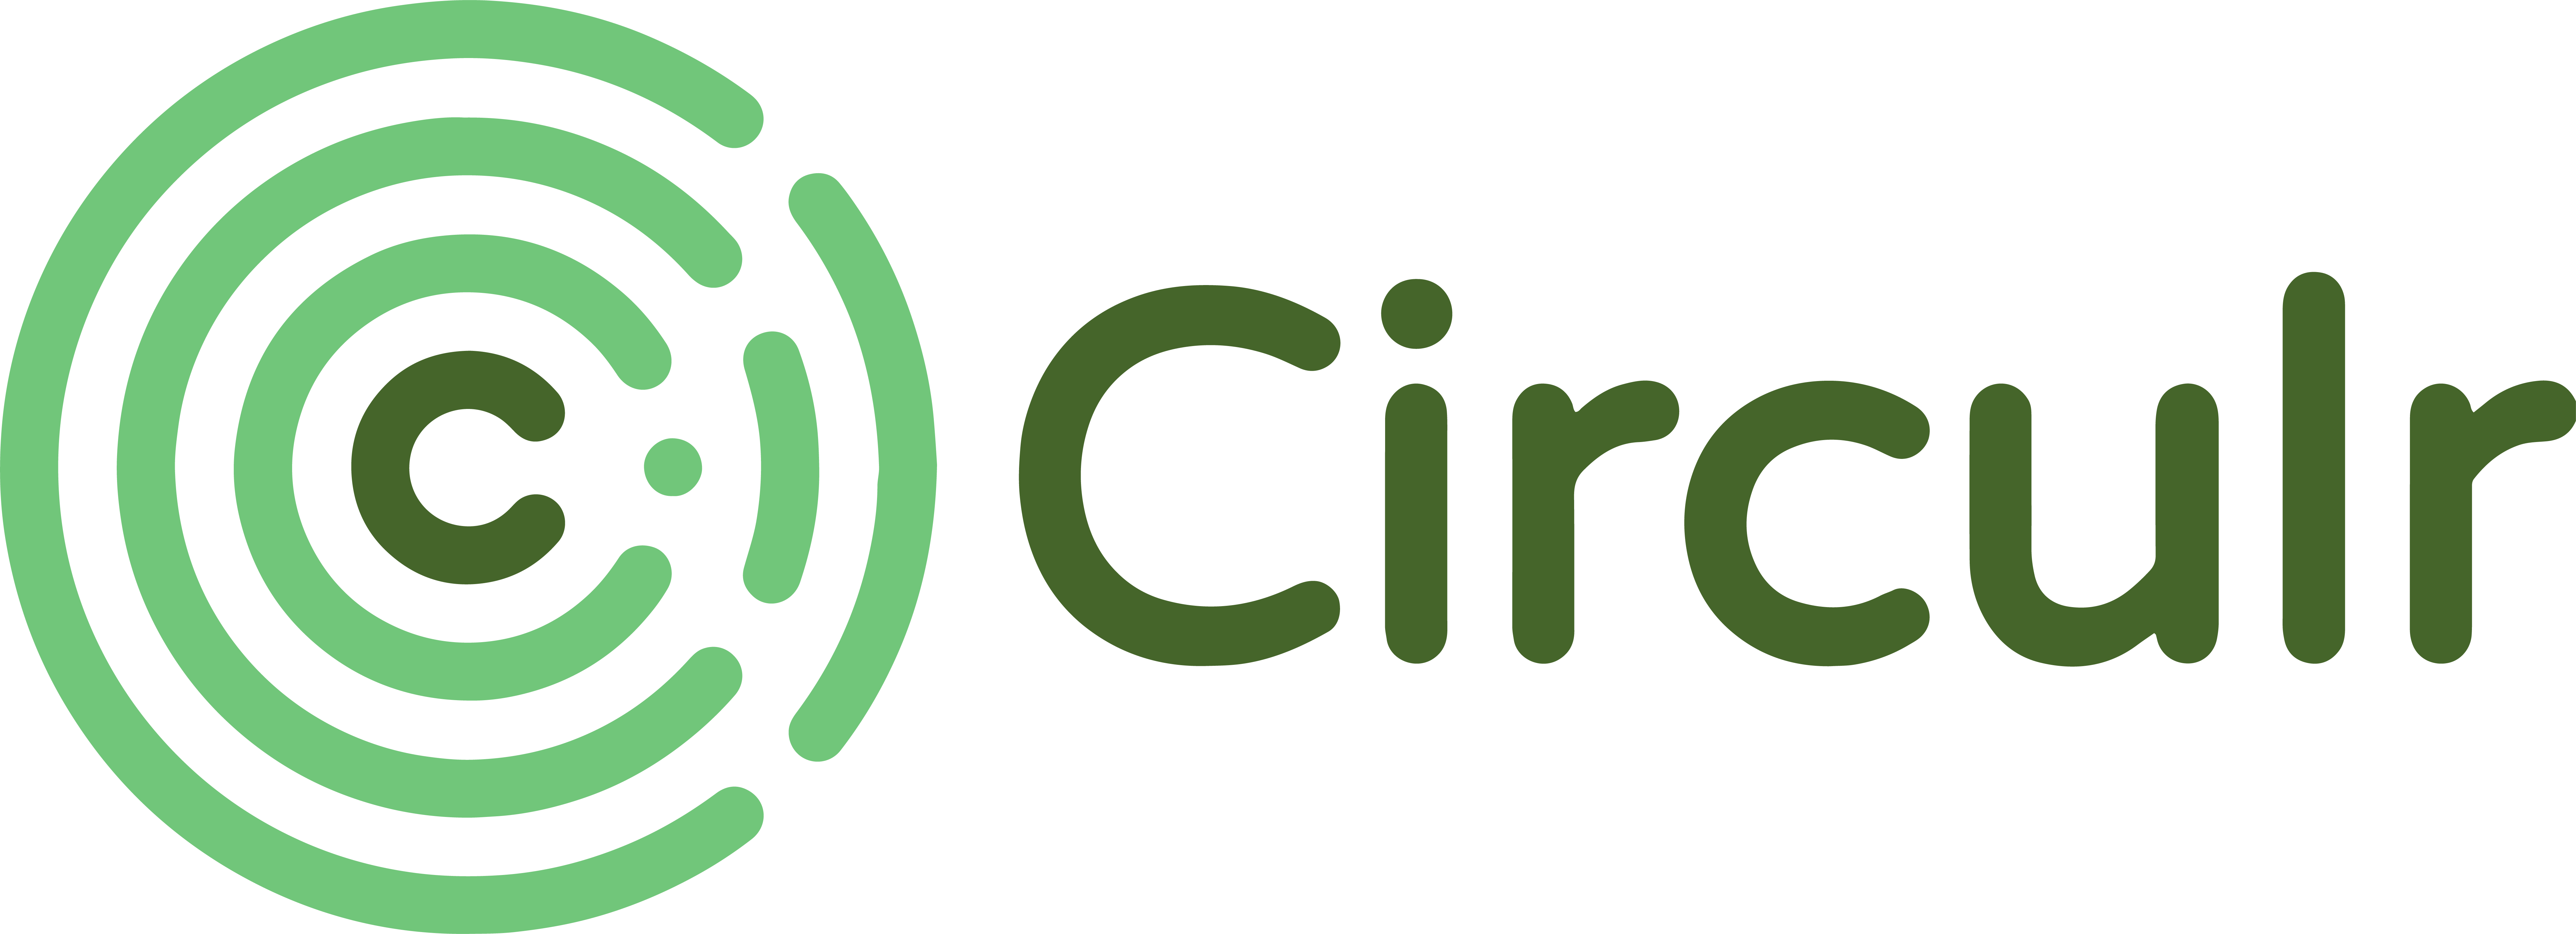 circulr logo